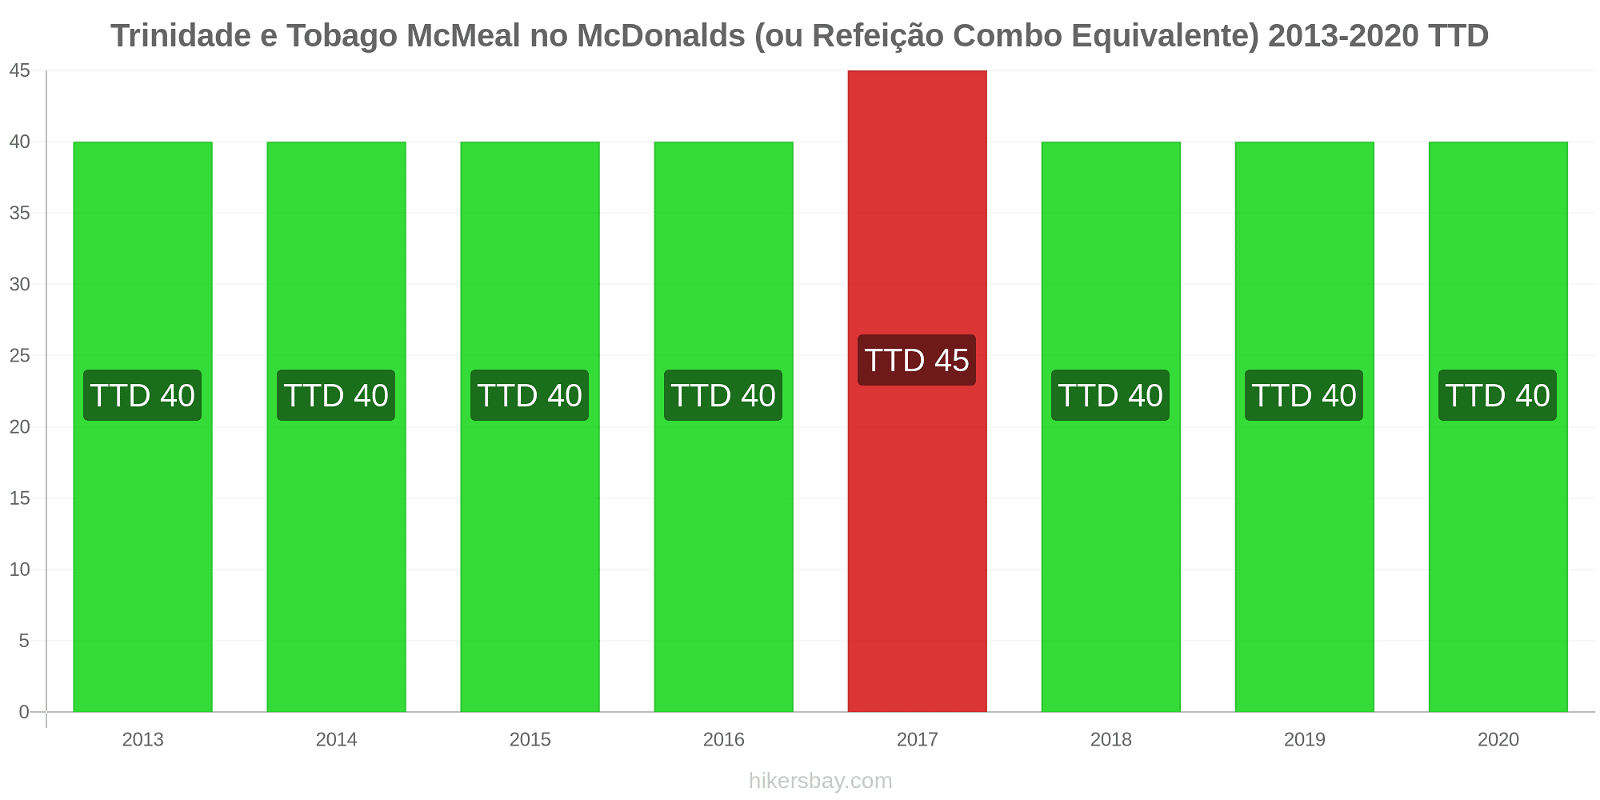 Trinidade e Tobago variação de preço McMeal no McDonald ' s (ou refeição Combo equivalente) hikersbay.com